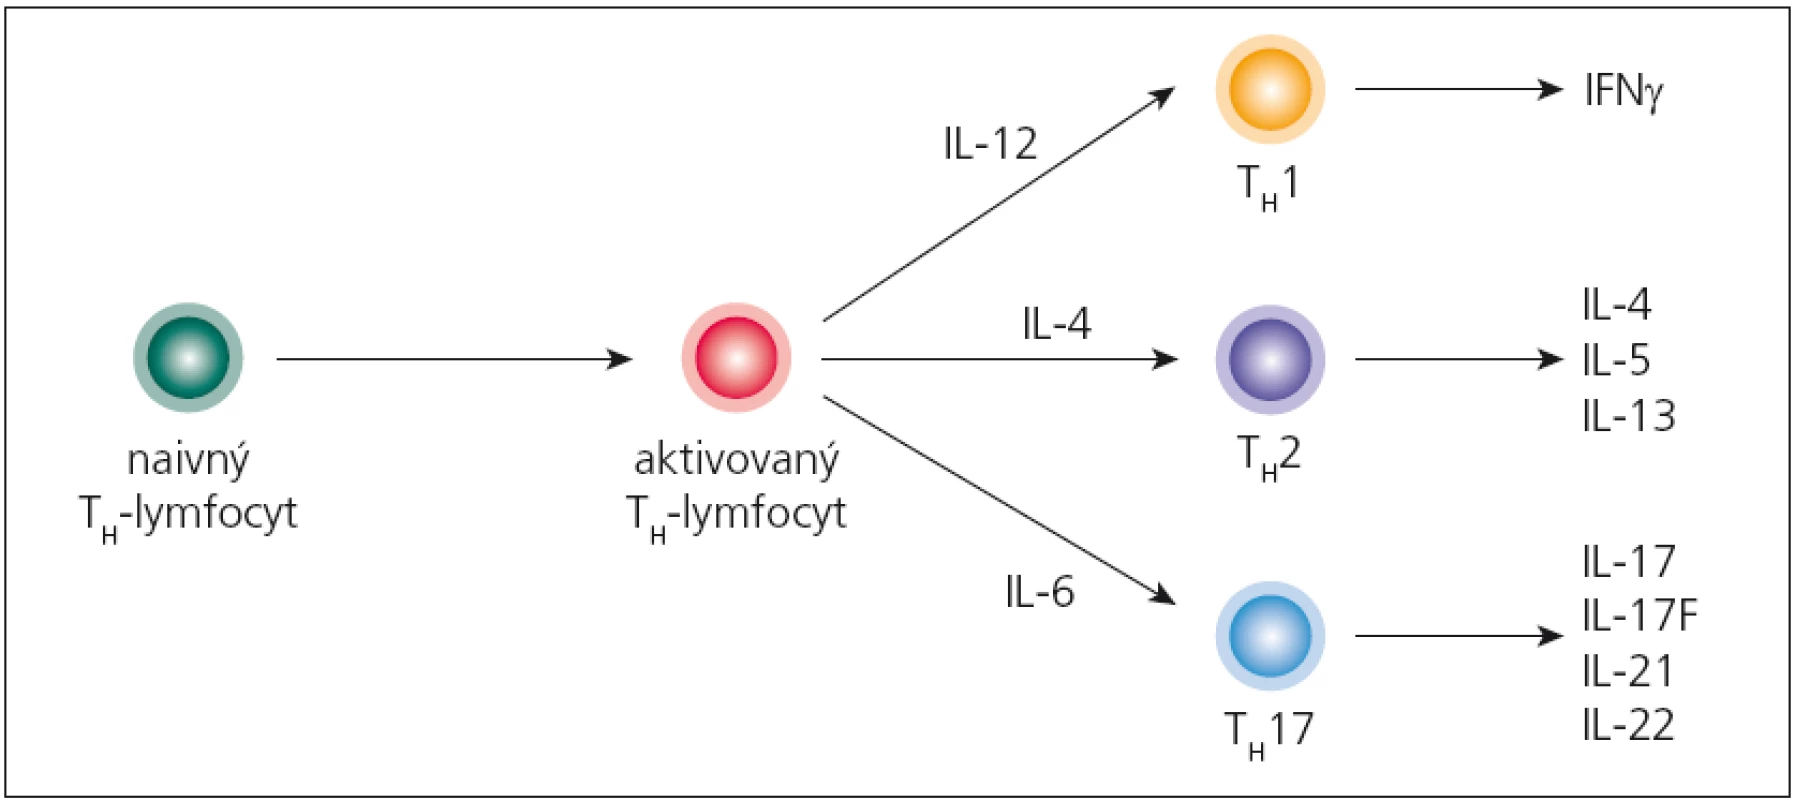 Diferenciácia naivných pomocných T-lymfocytov do jednotlivých subpopulácií.
Pomocný T-lymfocyt (T&lt;sub&gt;H&lt;/sub&gt;), ktorý opúšťa týmus, ešte nie je vydiferencovaný pre určitú špecifickú funkciu; označuje sa ako naivný (T&lt;sub&gt;H&lt;/sub&gt;0). Špecializáciu získava až pri interakcii s bunkami prezentujúcimi antigén, ktoré podľa charakteru antigénu, ktorý spracúvajú, syntetizujú rozdielne cytokíny. Ak takýmto cytokínom je IL-12, naivný T&lt;sub&gt;H&lt;/sub&gt;-lymfocyt sa bude diferencovať do subpopulácie T&lt;sub&gt;H&lt;/sub&gt;1, ak IL-4, tak vzniká subpopulácia T&lt;sub&gt;H&lt;/sub&gt;2, a napokon ak sa v mikroprostredí nachádza IL-1 alebo IL-6, diferenciácia ide do línie T&lt;sub&gt;H&lt;/sub&gt;17.